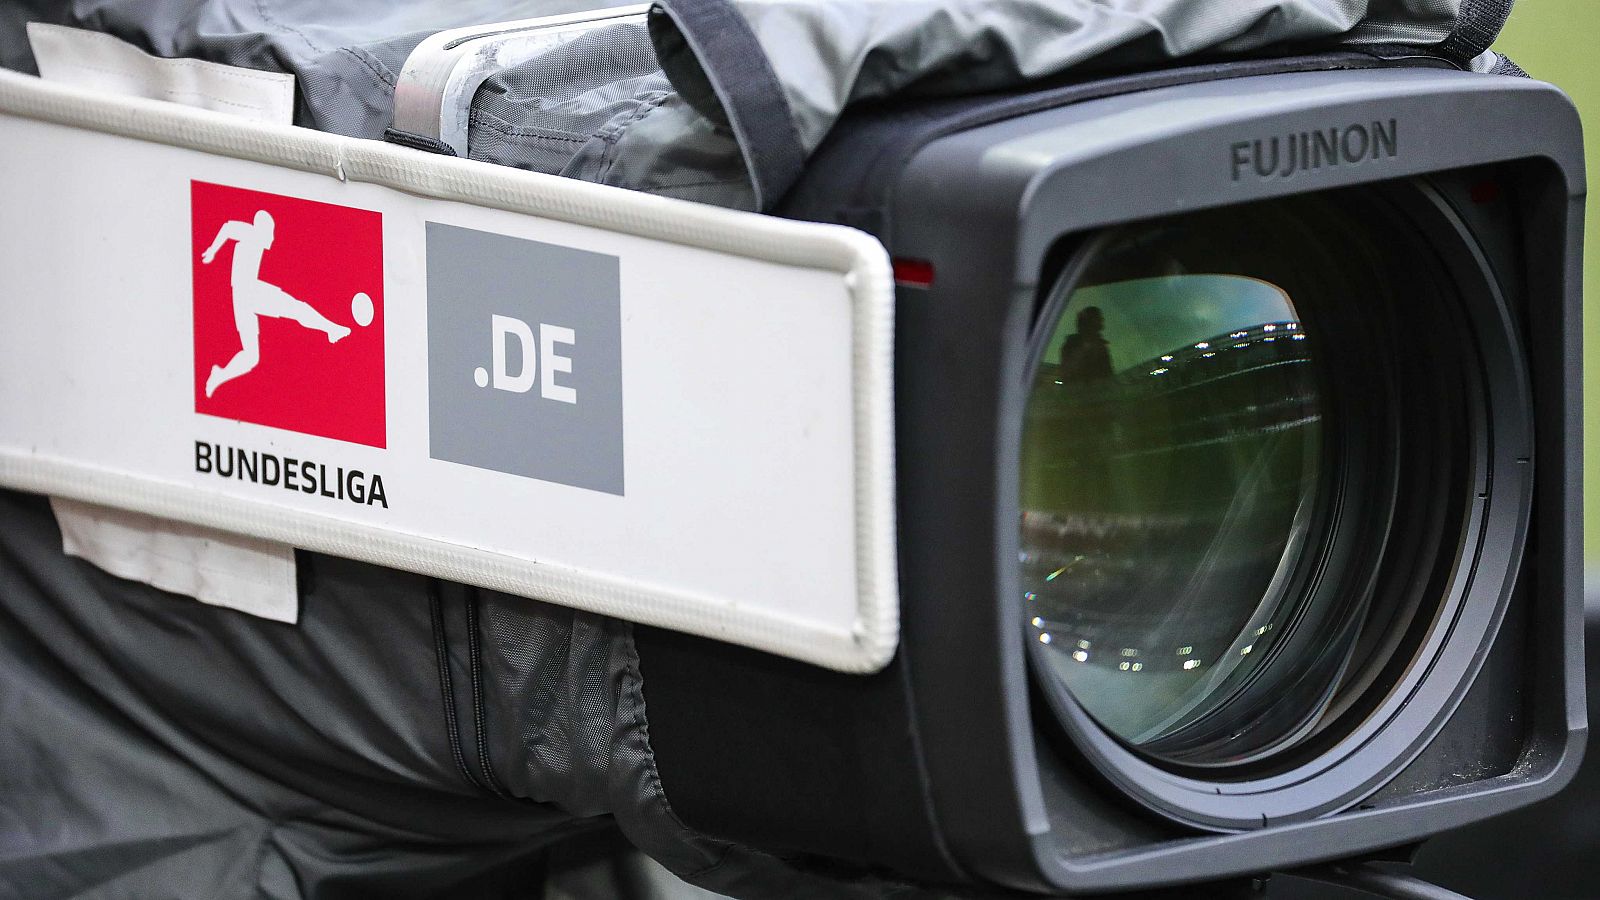 Alemania autoriza la reanudación de la Bundesliga de fútbol tras el parón por el coronavirus